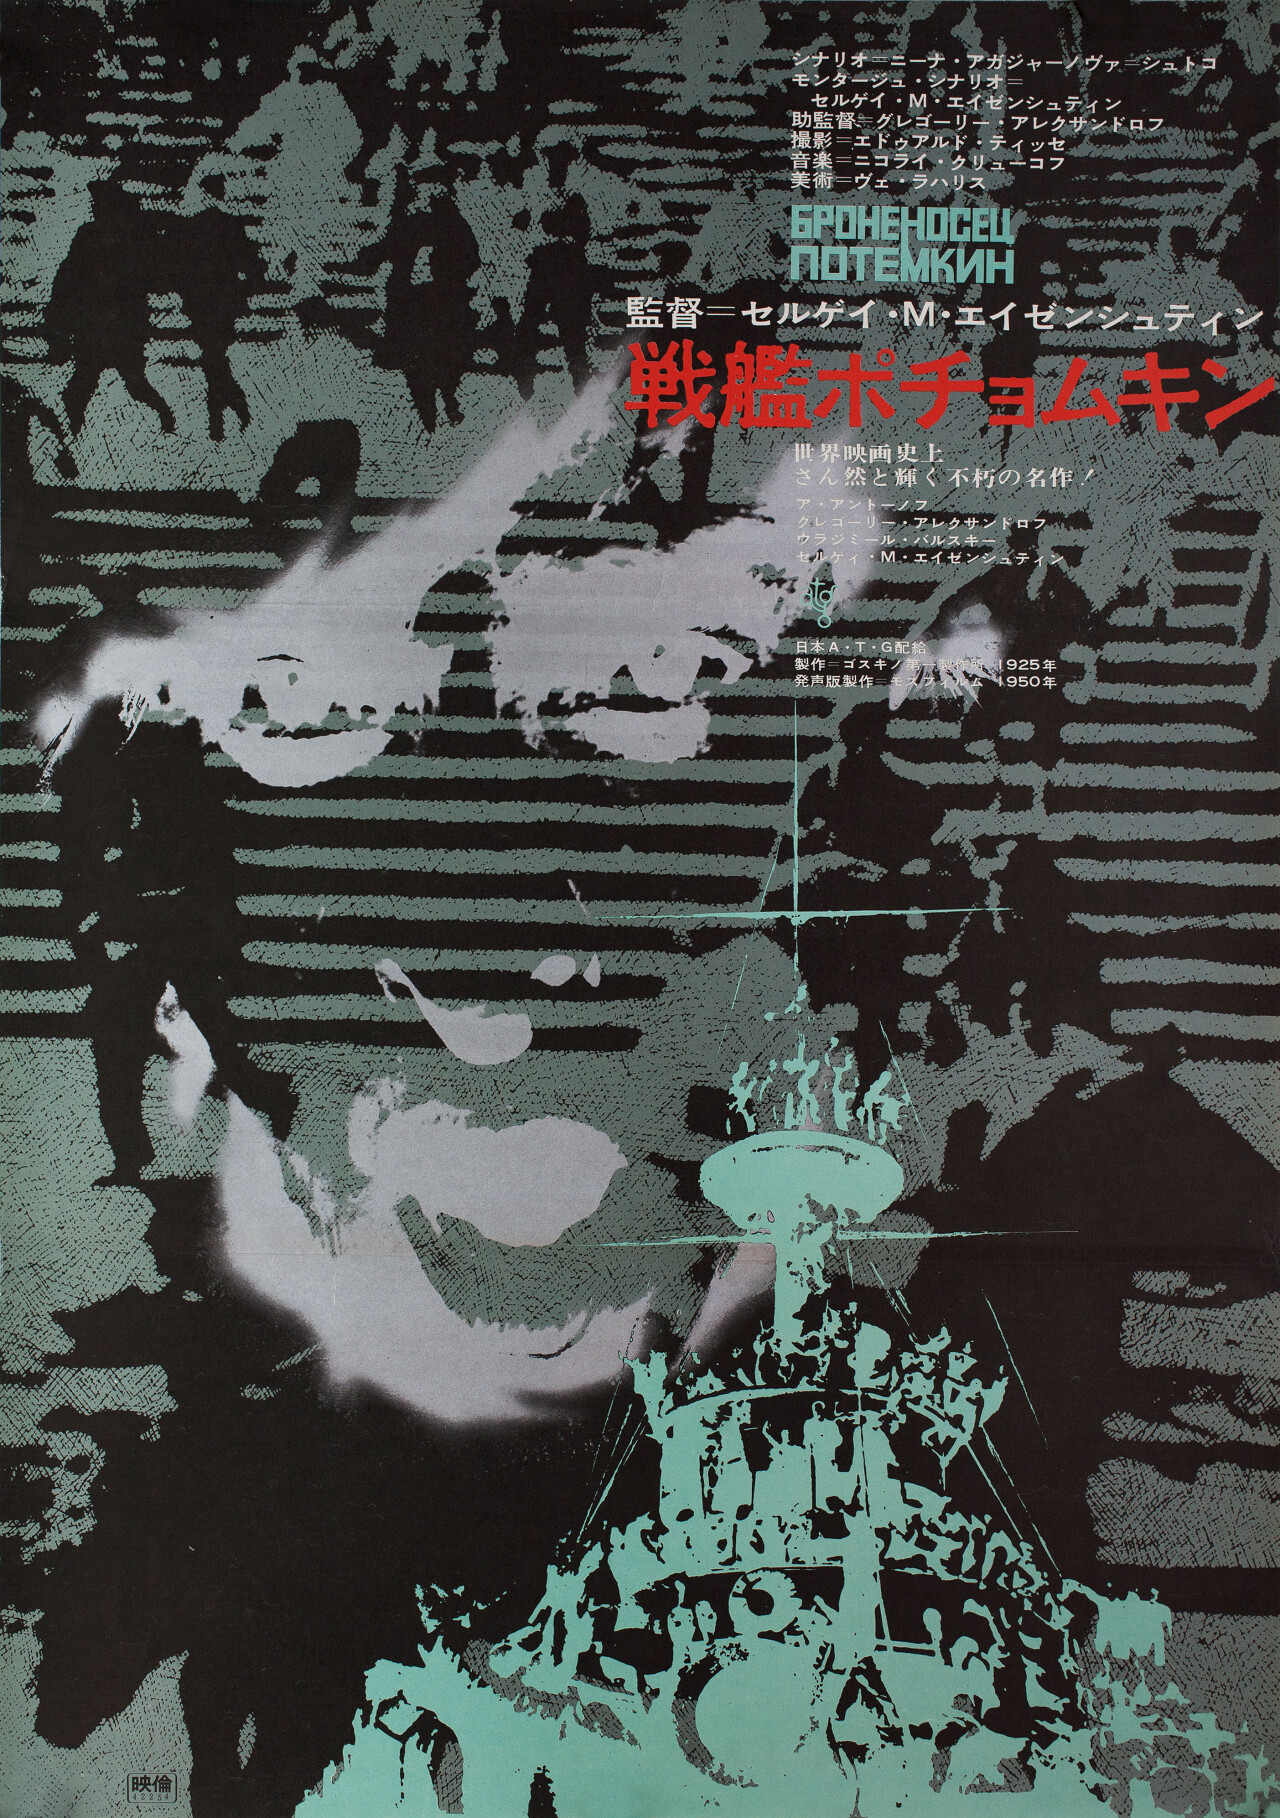 Броненосец Потёмкин (Battleship Potemkin, 1925), режиссёр Сергей Михайлович Эйзенштейн, японский постер к фильму (графический дизайн, 1967 год)